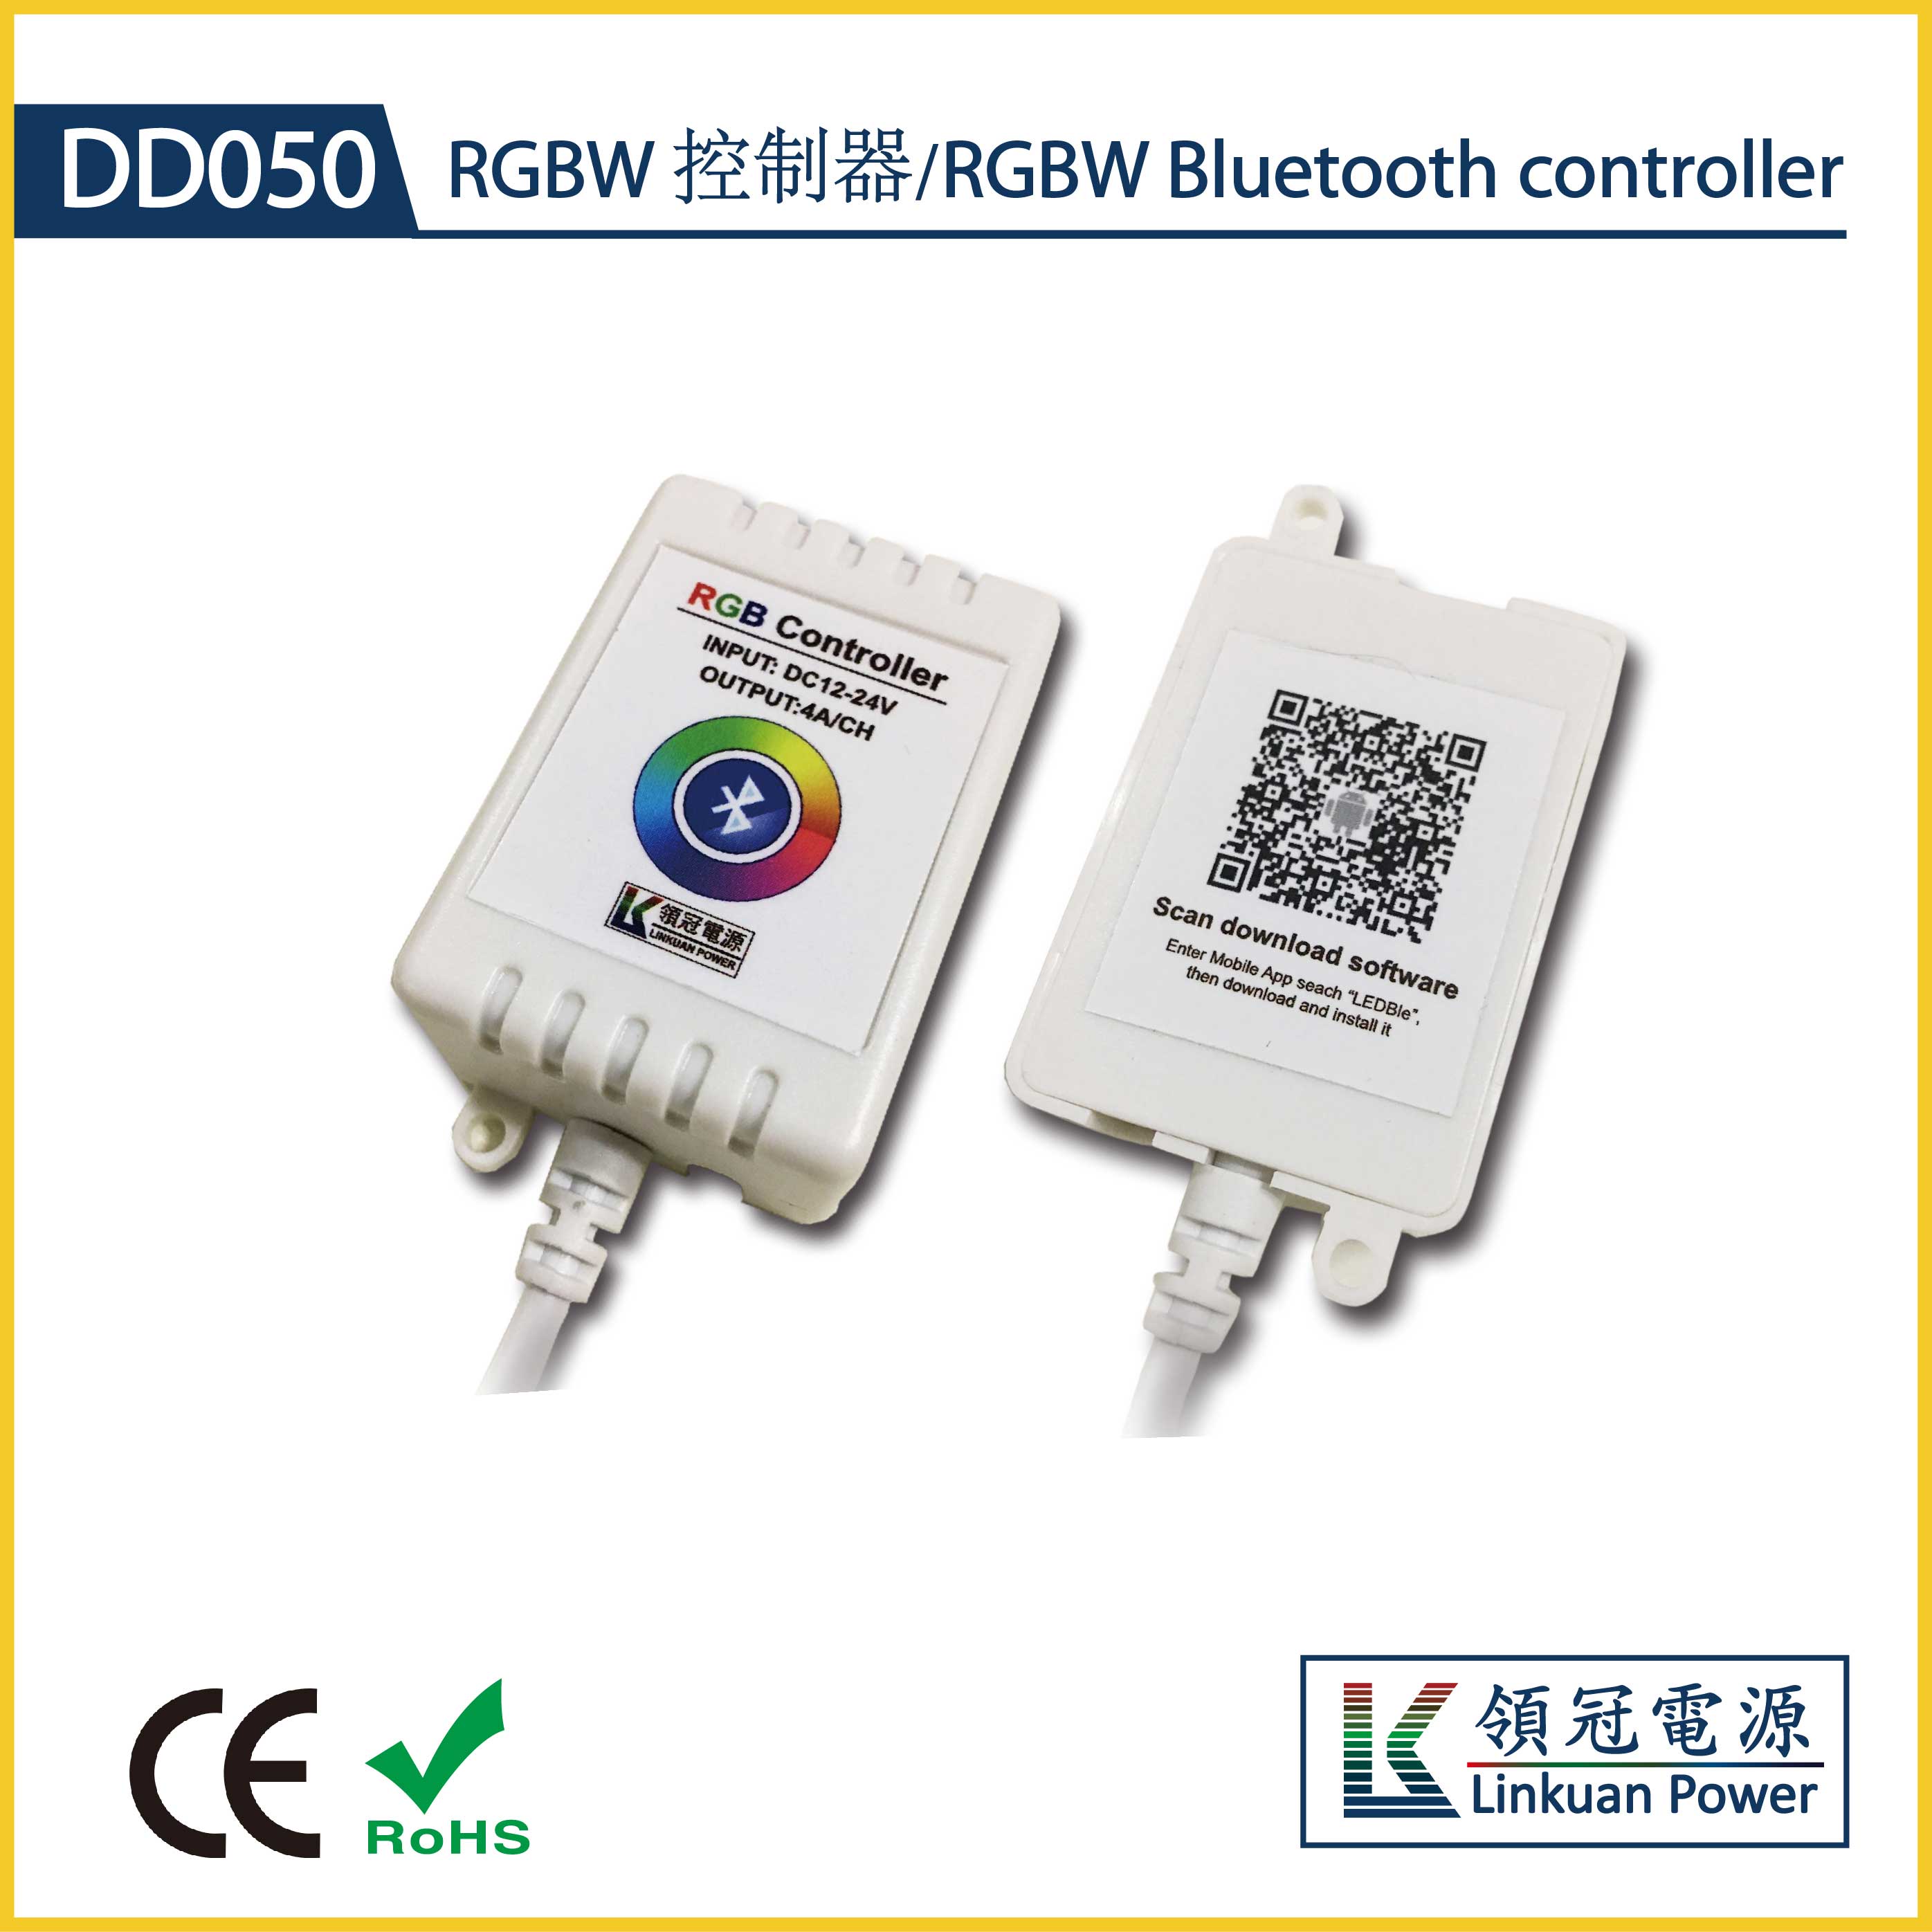 DD050 bluetooth RGB Controller